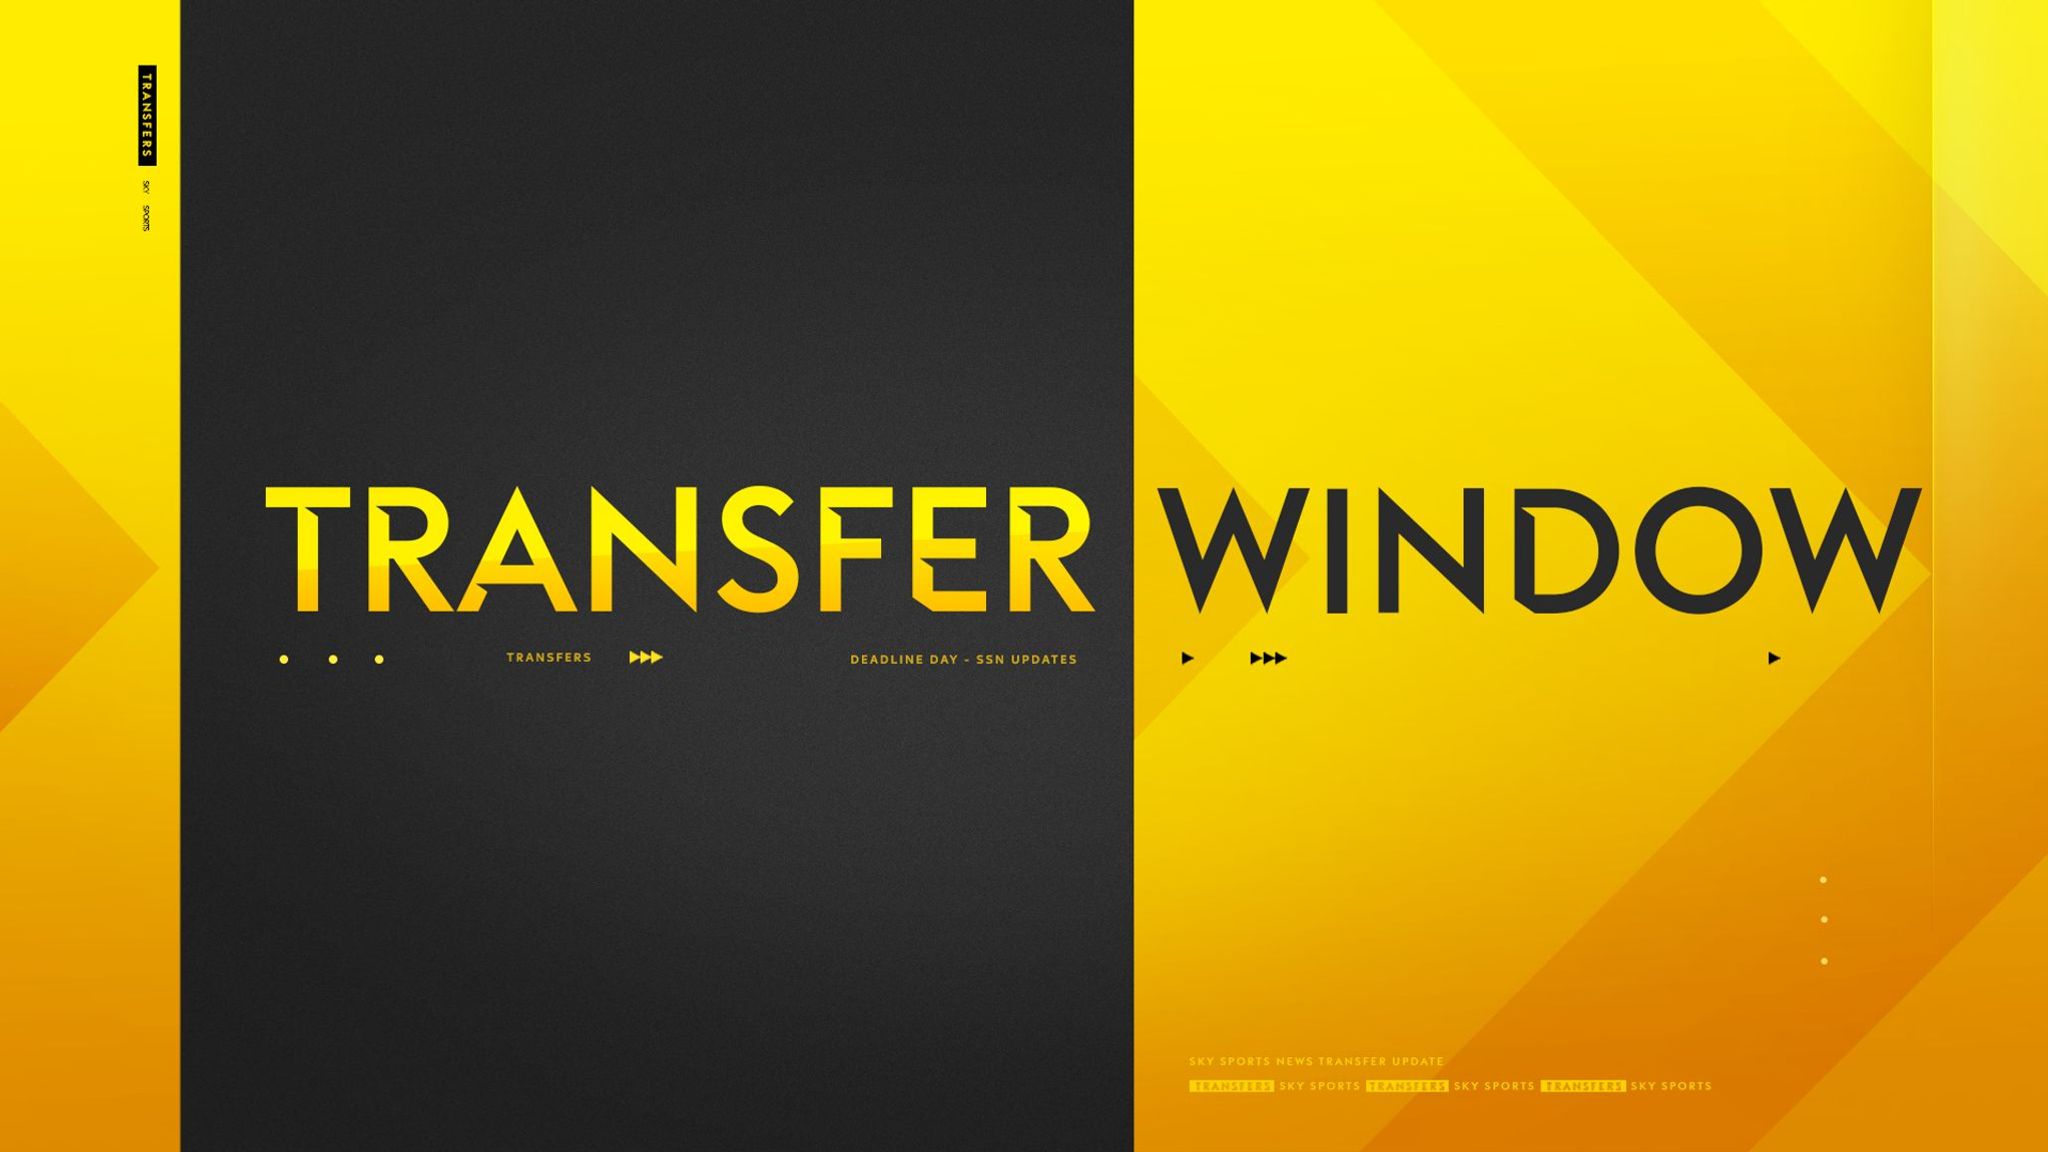 F8D05226 1DDC 479F 94B5 A5FDE49883FB - How will the new January transfer window signings make an impact